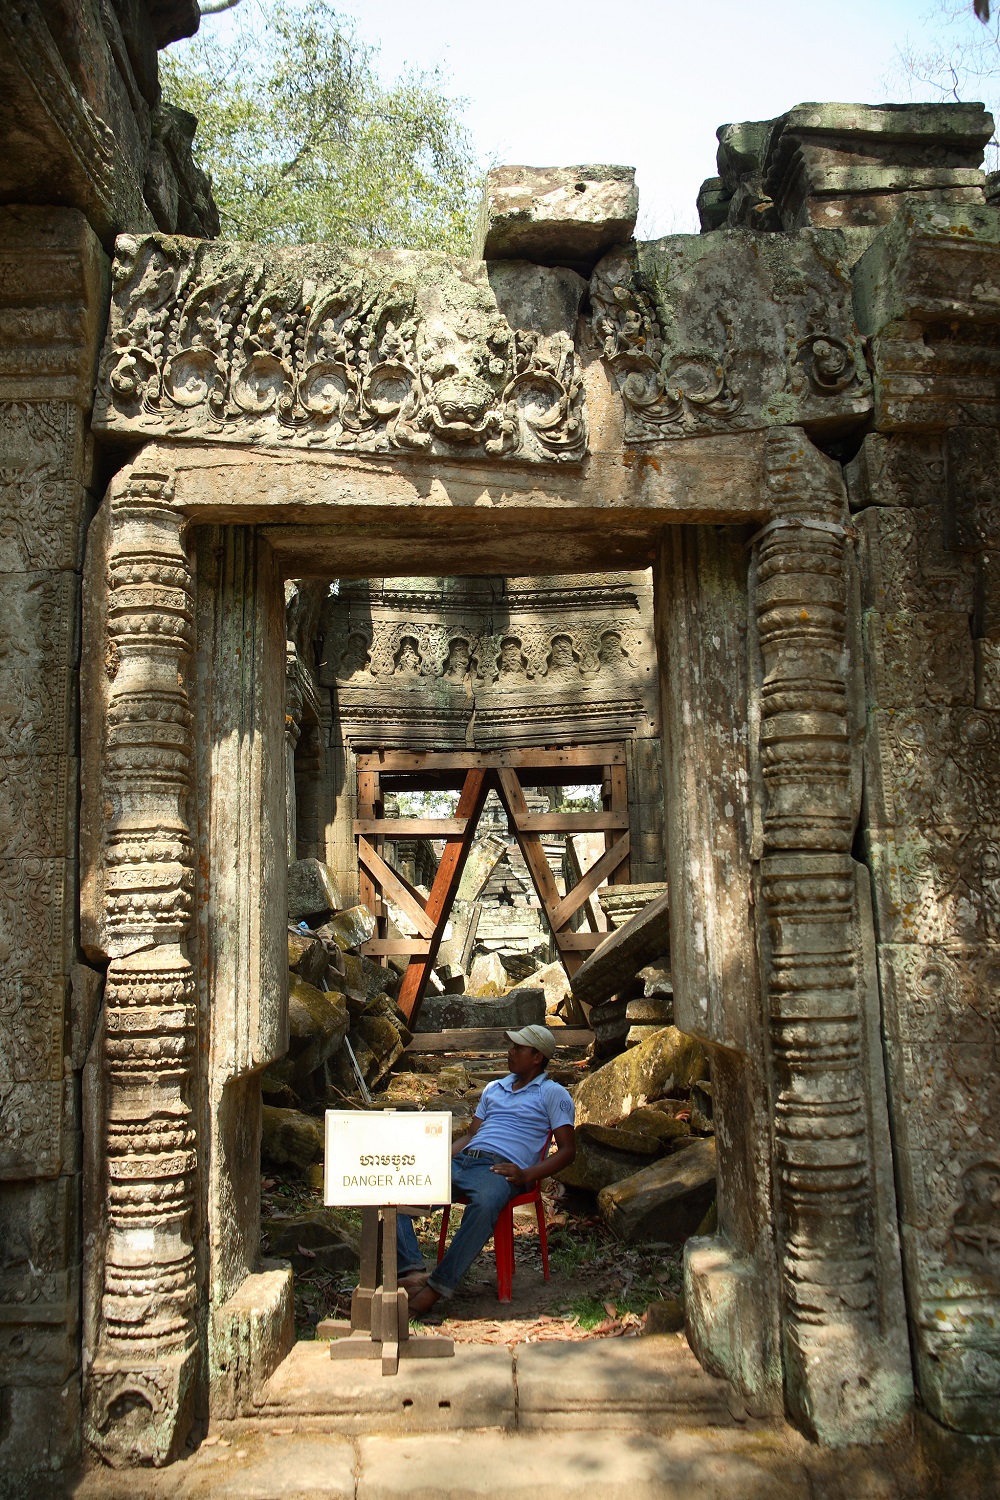   Приключения: Ангкор Ват — ужас и мистика древних. Храм древних богов кхмеров - фото 7